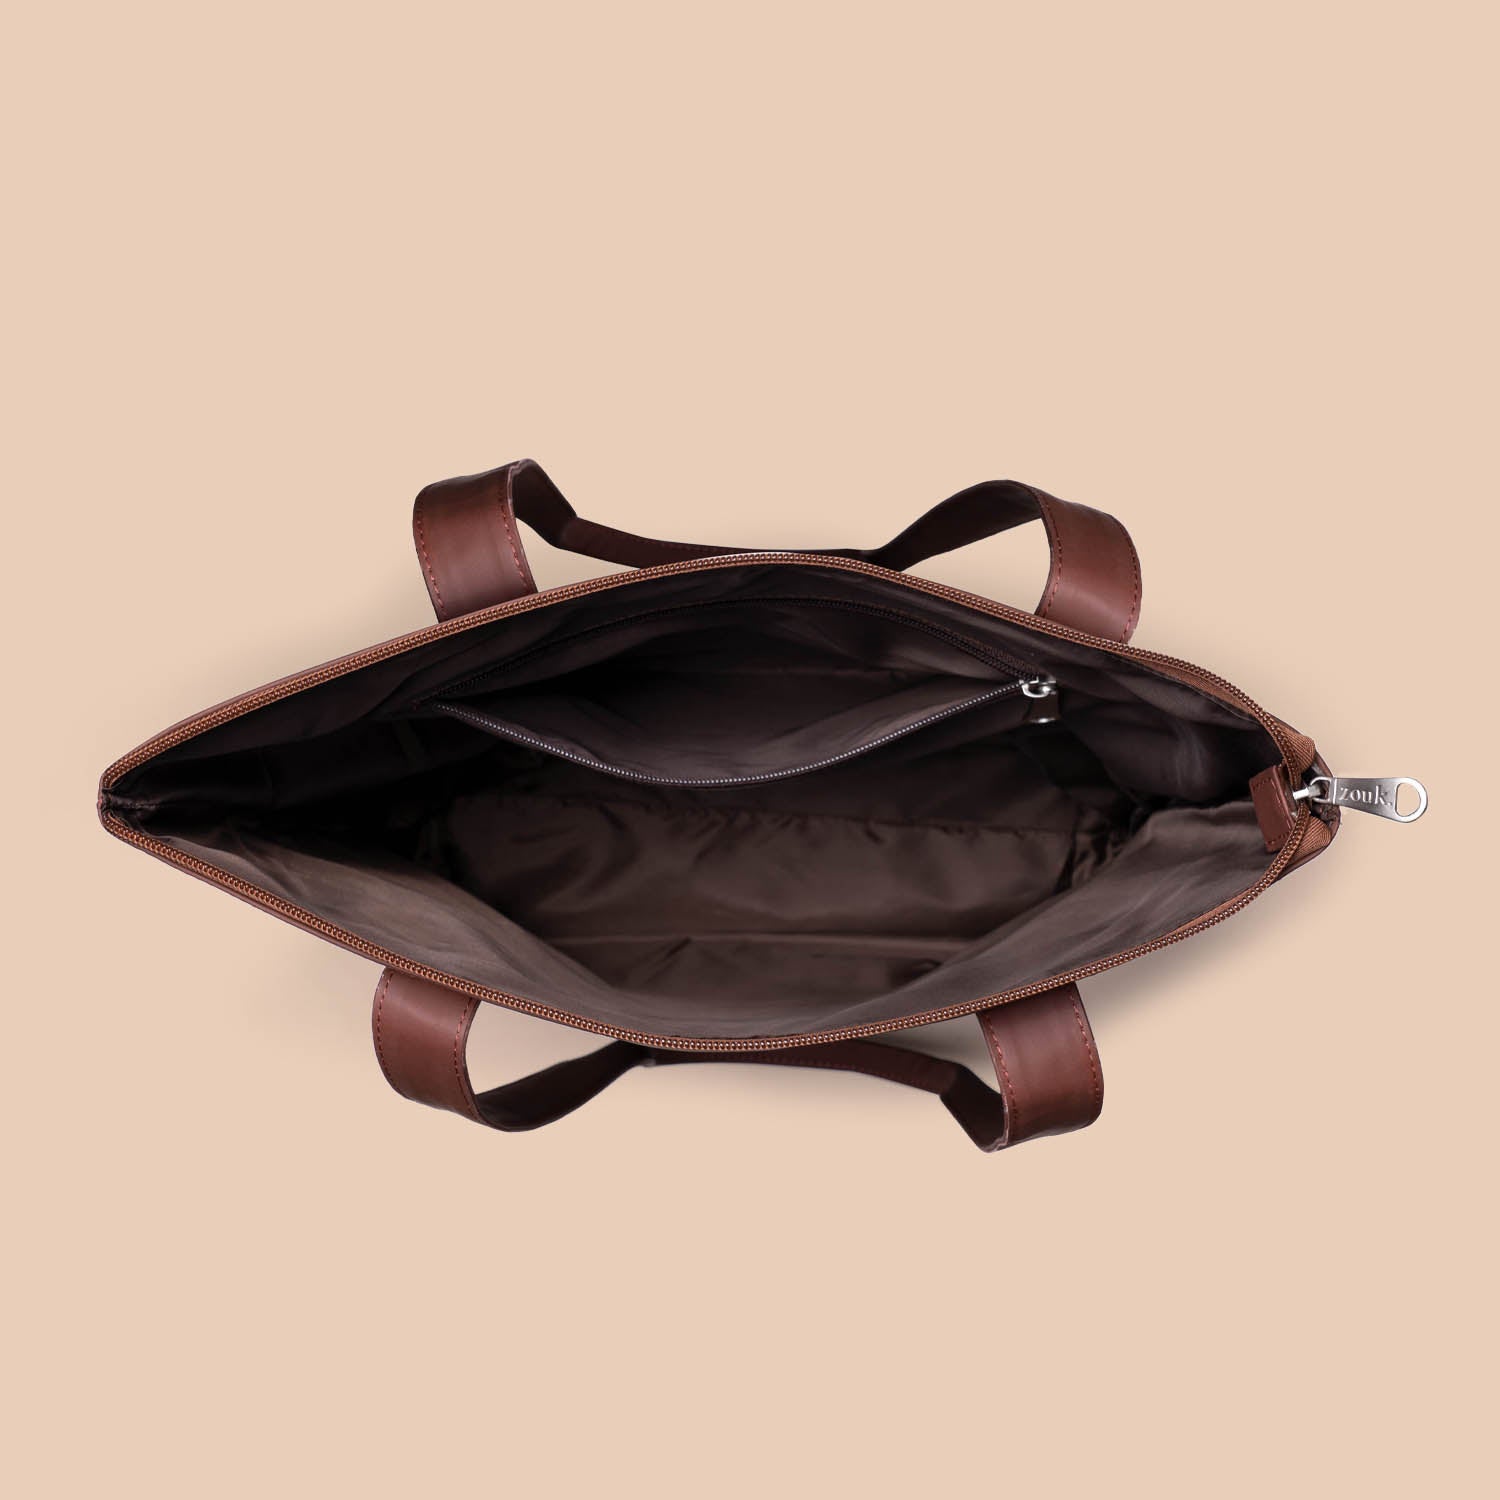 Bidri Kaiser & Kutch Gamthi - Women's Office Bag & Everyday Tote Bag Combo